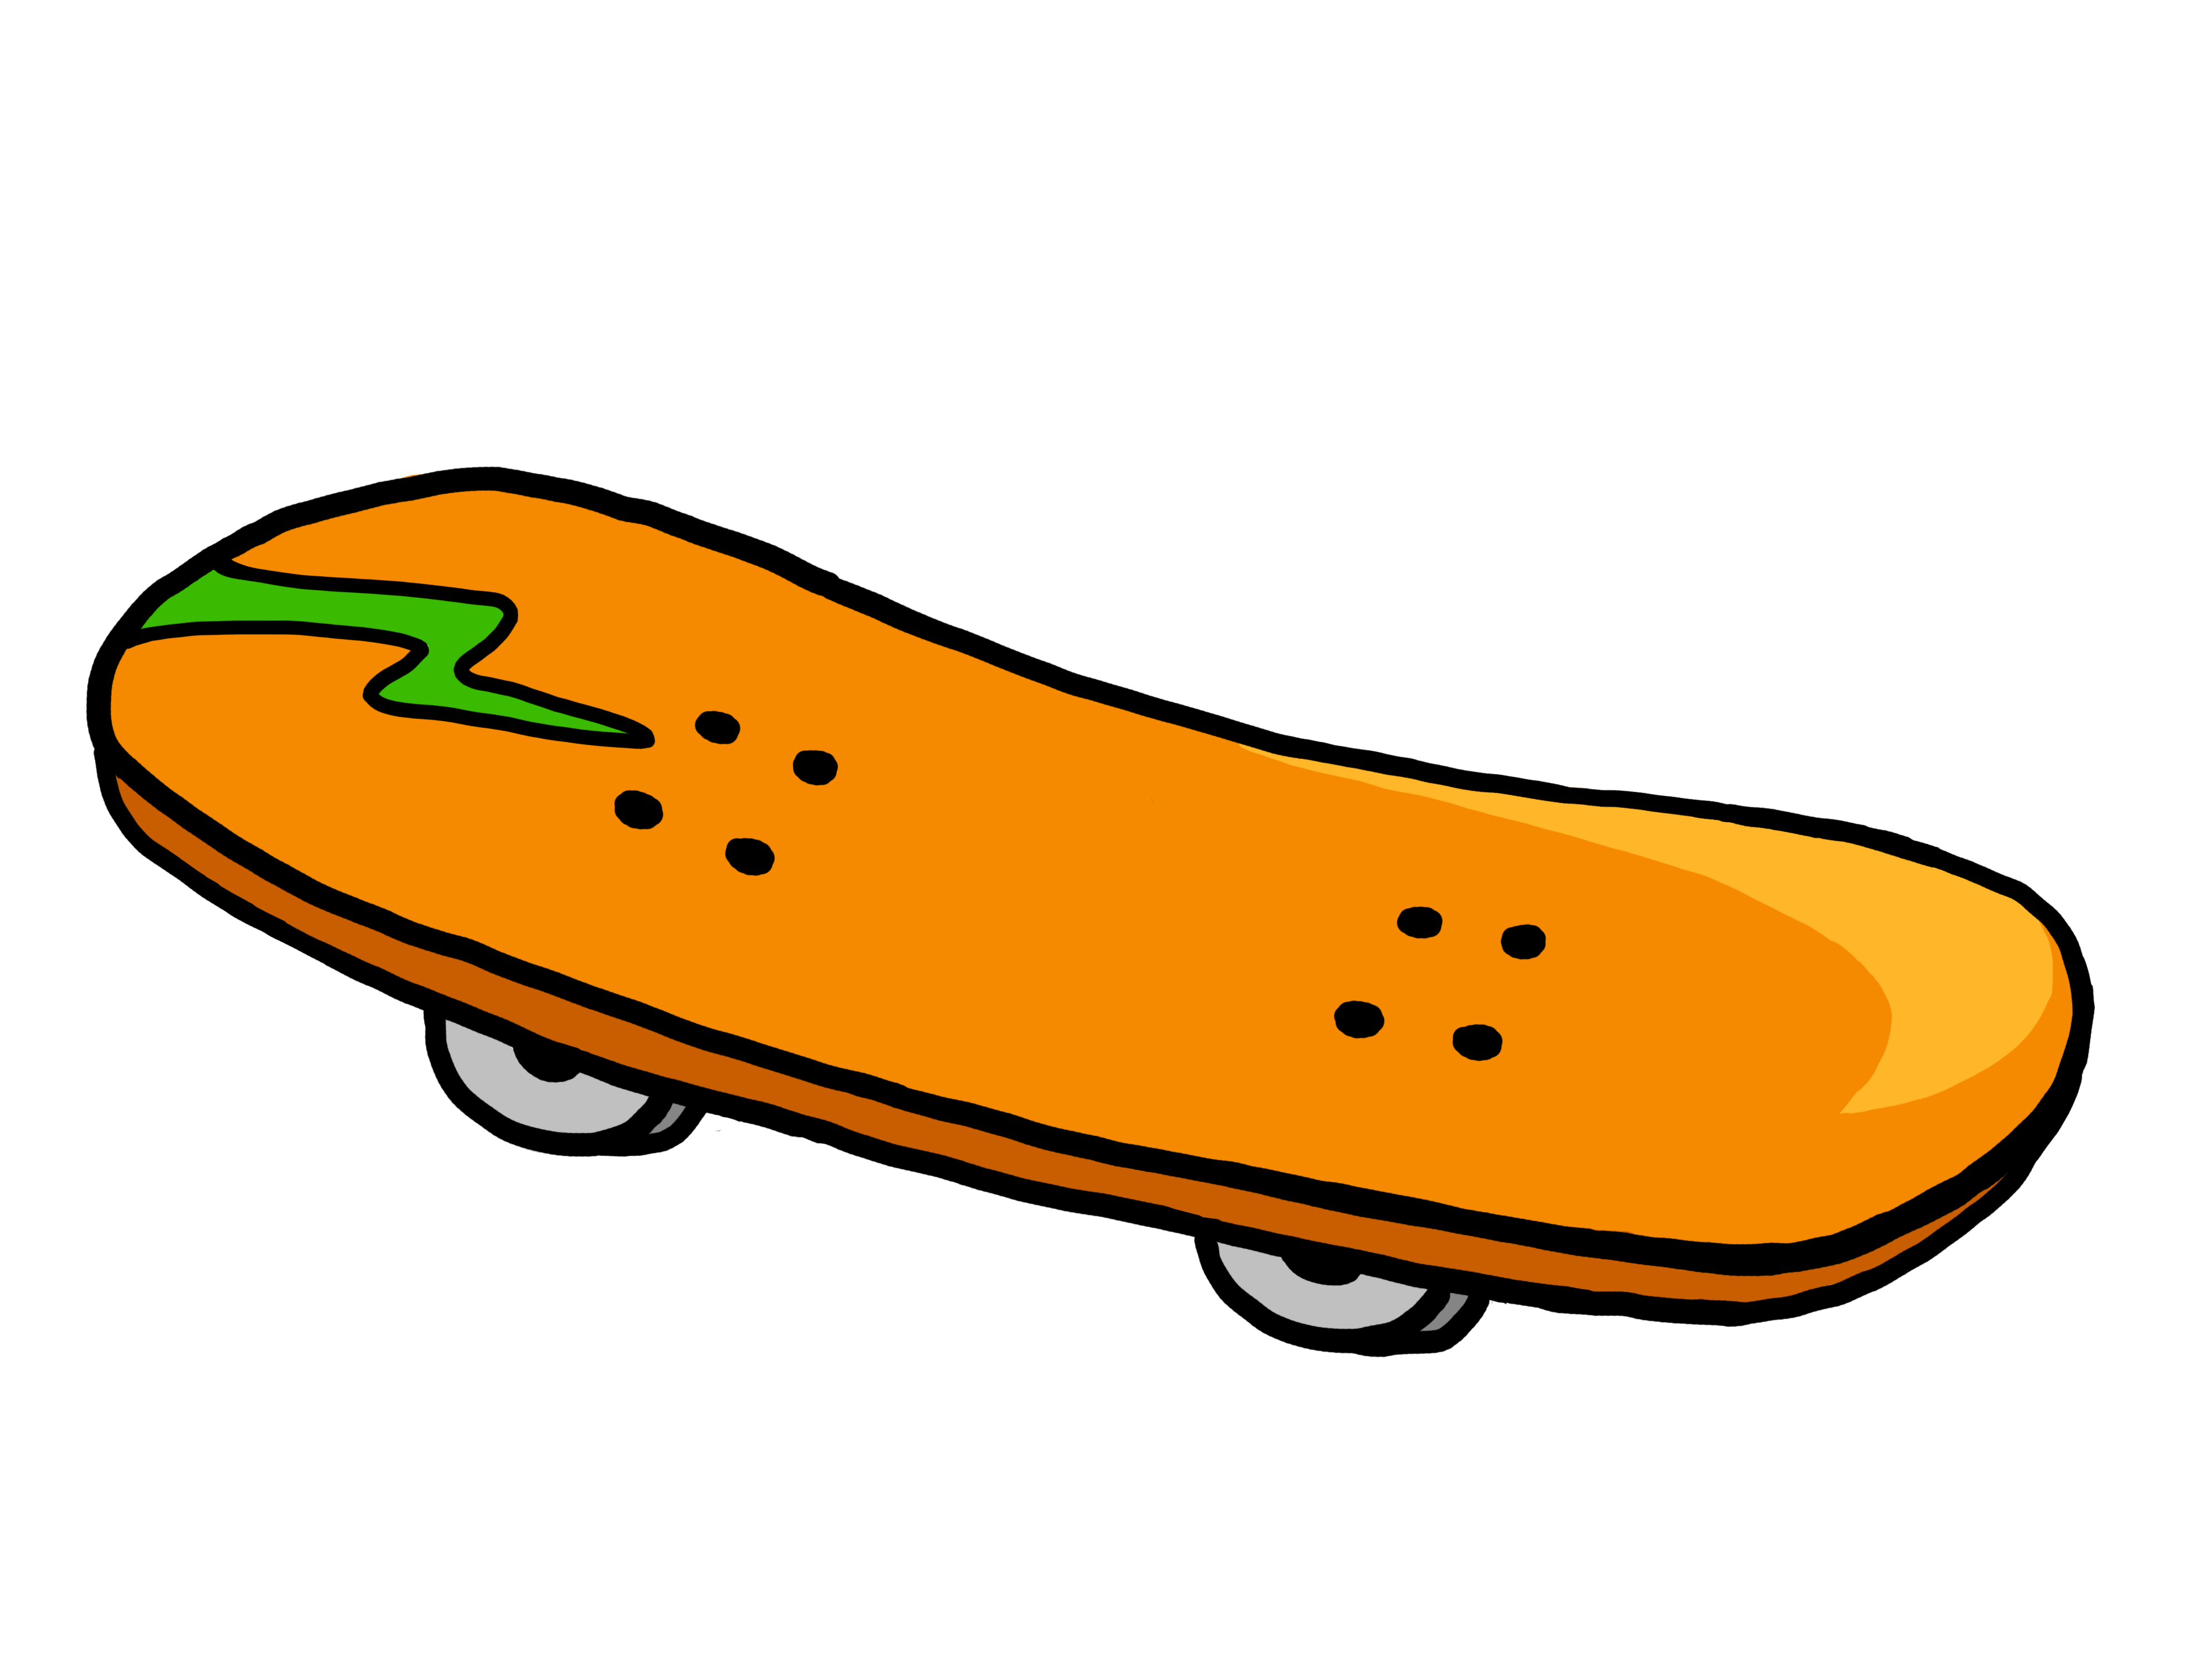 skateboard clipart - Clipart Skateboard